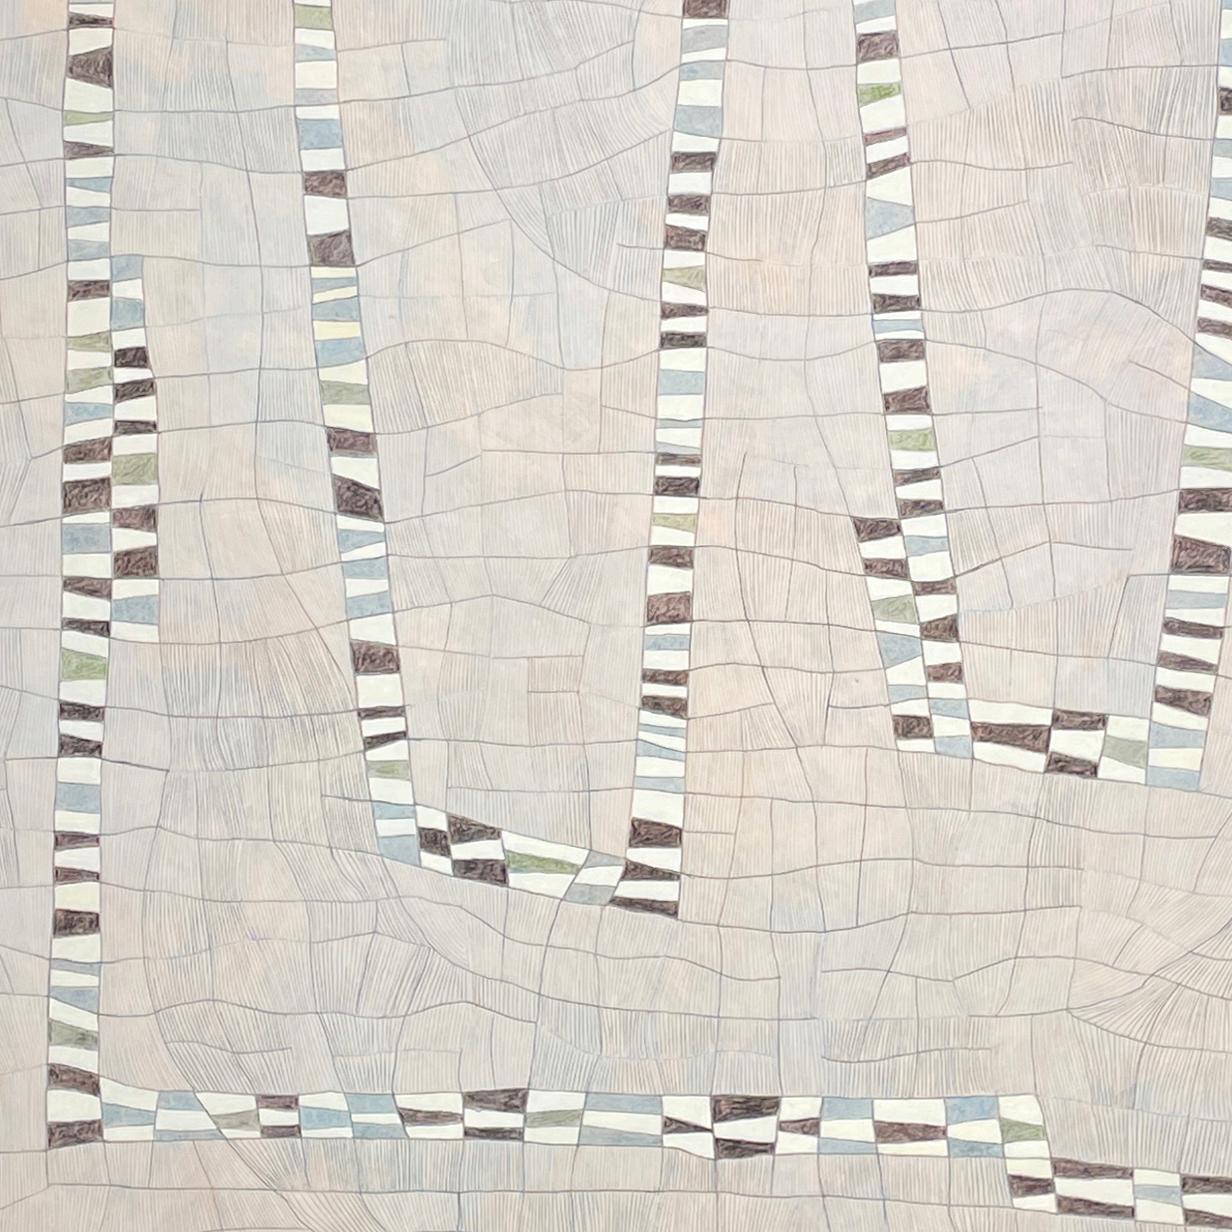 Detailliertes abstraktes geometrisches Gemälde, inspiriert von städtischen Gitternetzen in Hellgrau und Blau, mit Akzenten in Schwarz und Weiß
